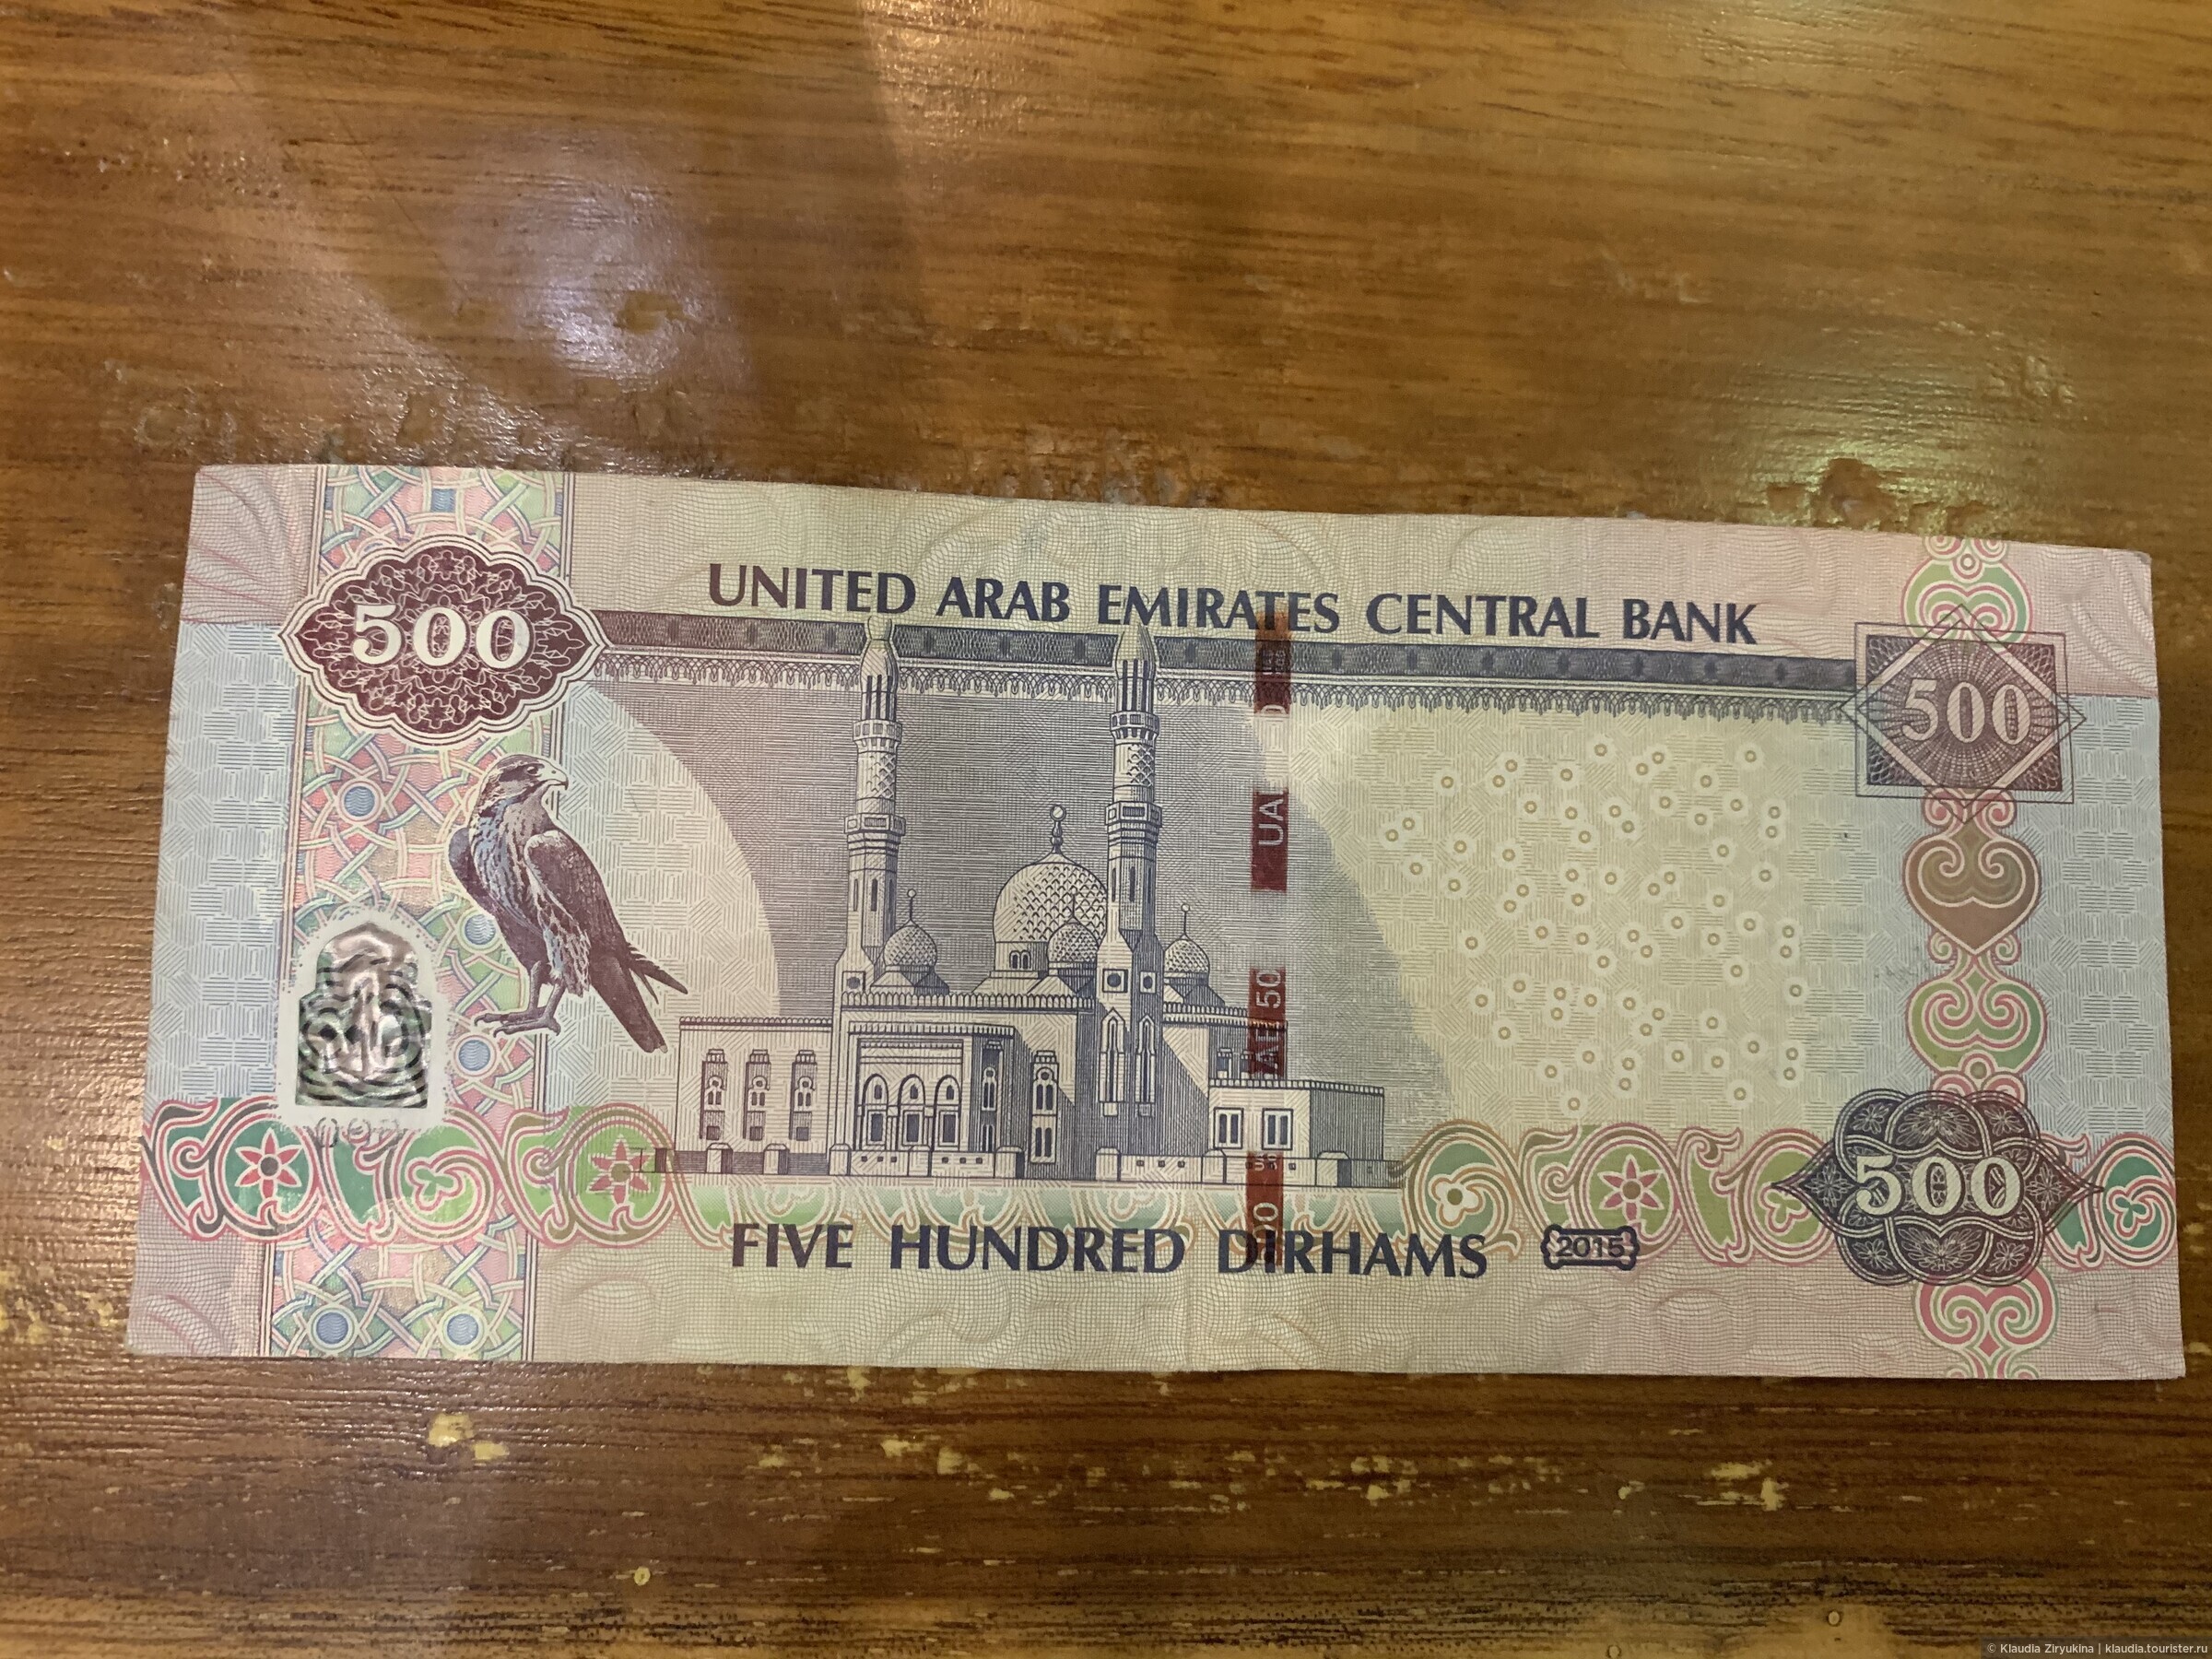 Рубль дирхам курс на сегодня в дубае. Купюры с мечетью. Купюра 500 дирхам. Деньги Дубая фото. 500 Дирхам ОАЭ банкнота.